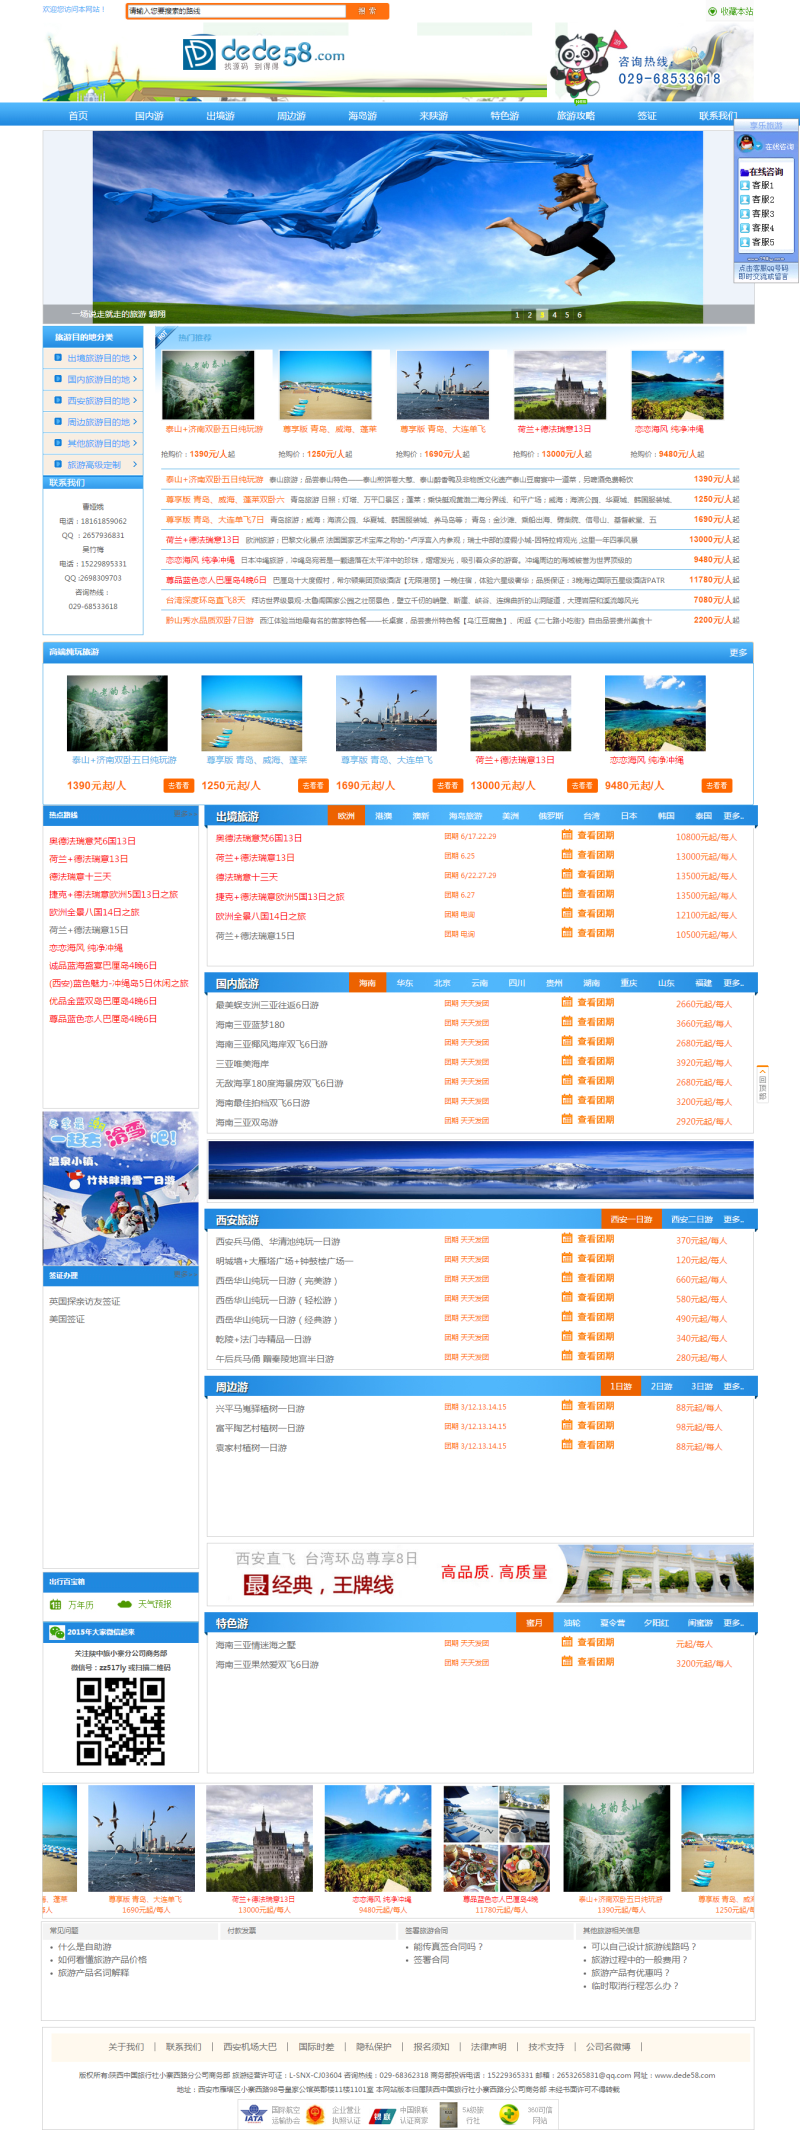 大气旅行社旅游类公司网站织梦模板